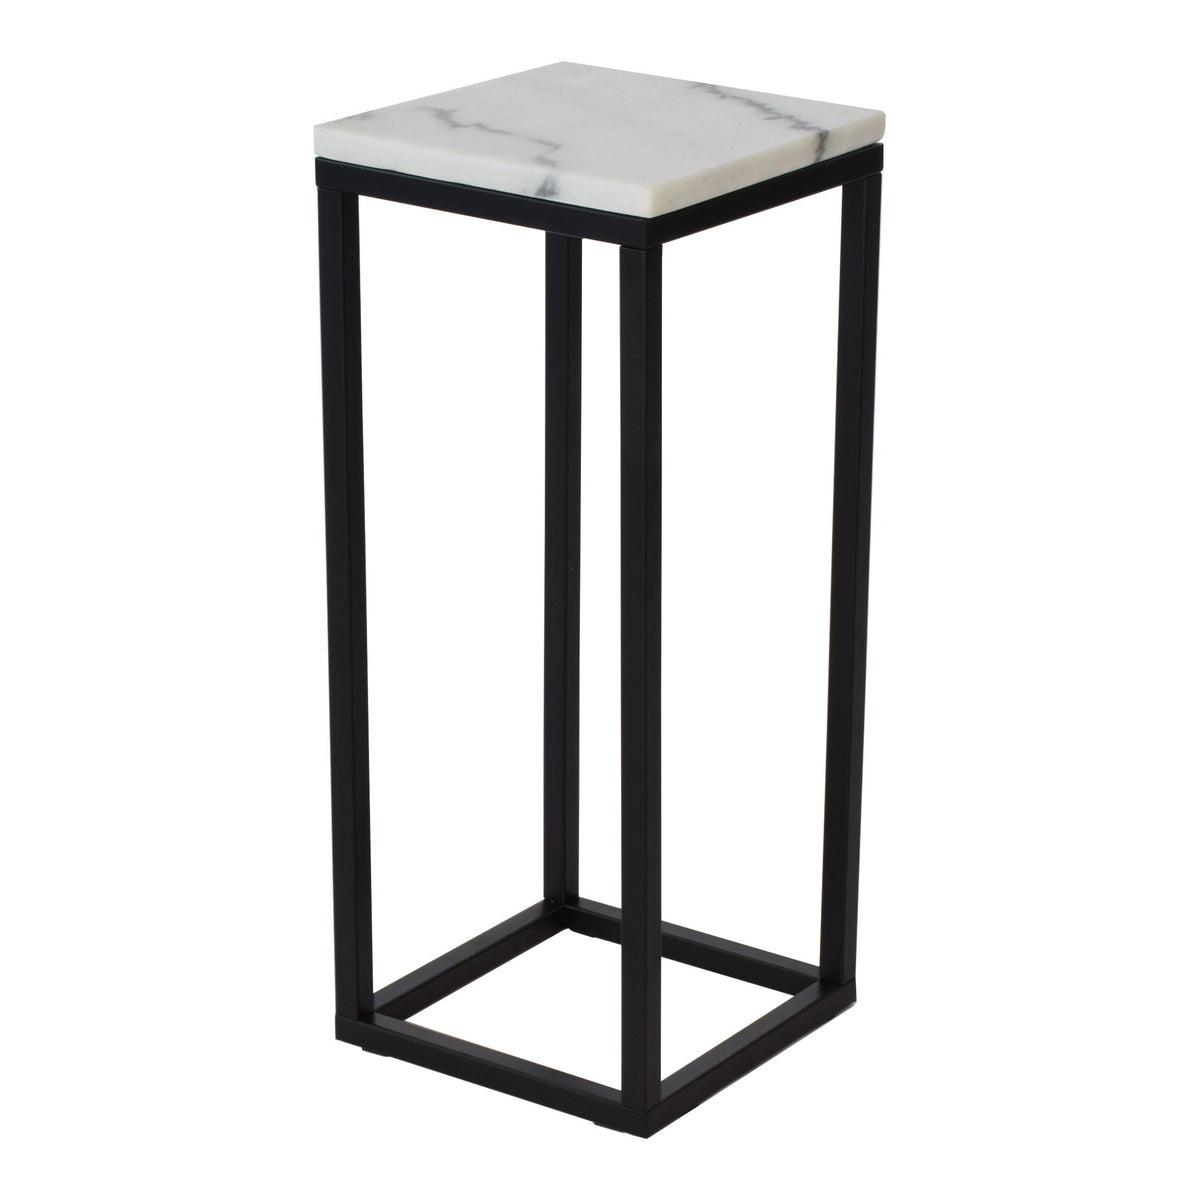 Přístavný stolek Accent - čtverec, nižší (mramor, černá)